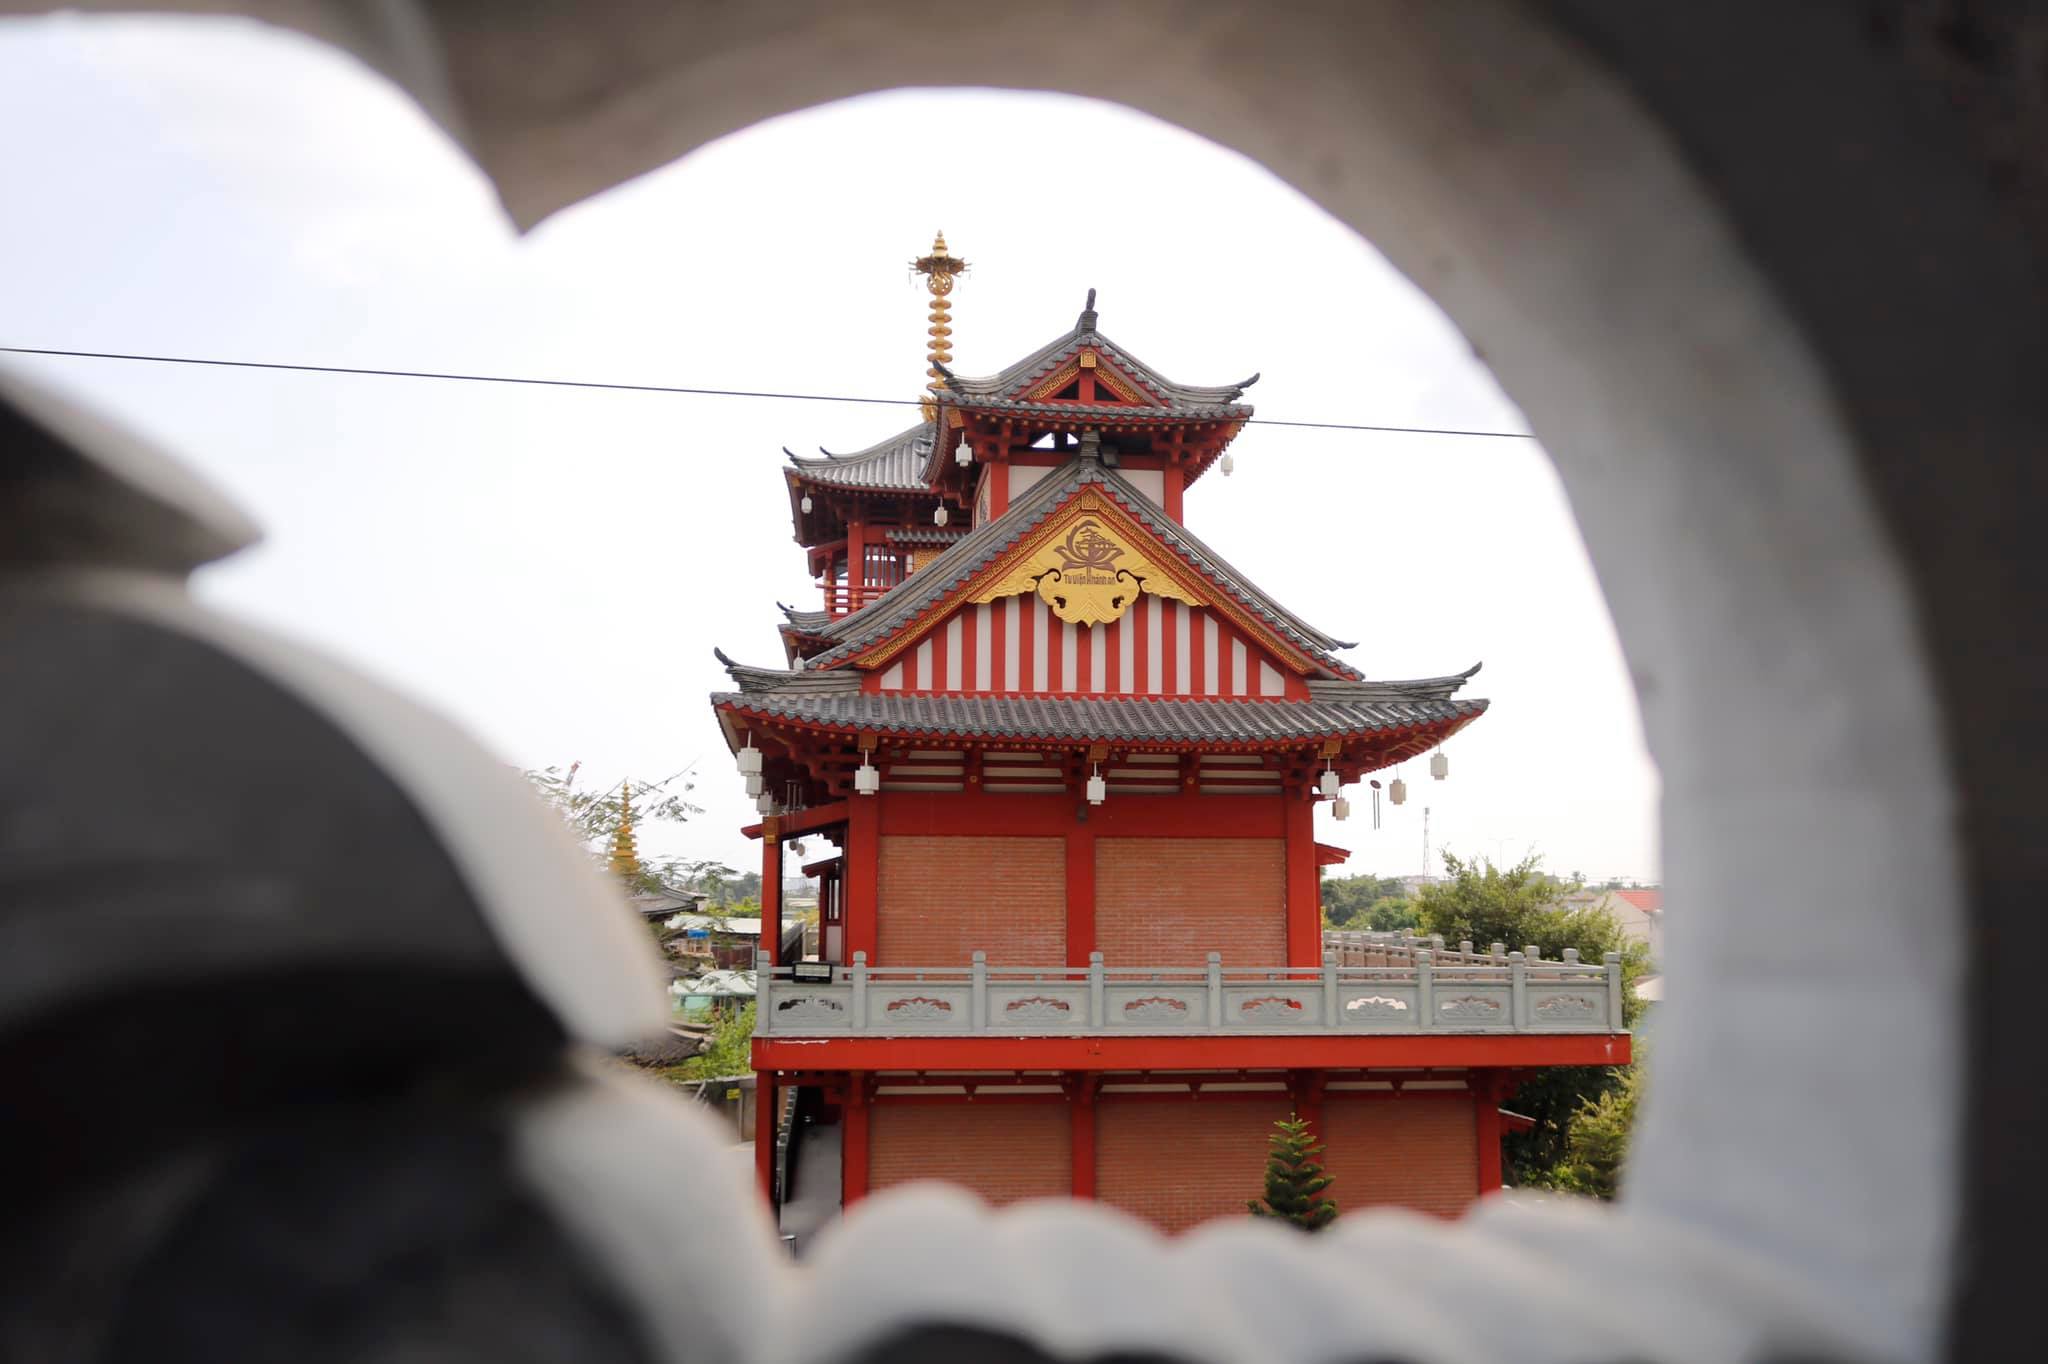 Tu viện Khánh An - Ngôi chùa mang đậm nét kiến trúc Nhật Bản ngay tại Sài Gòn